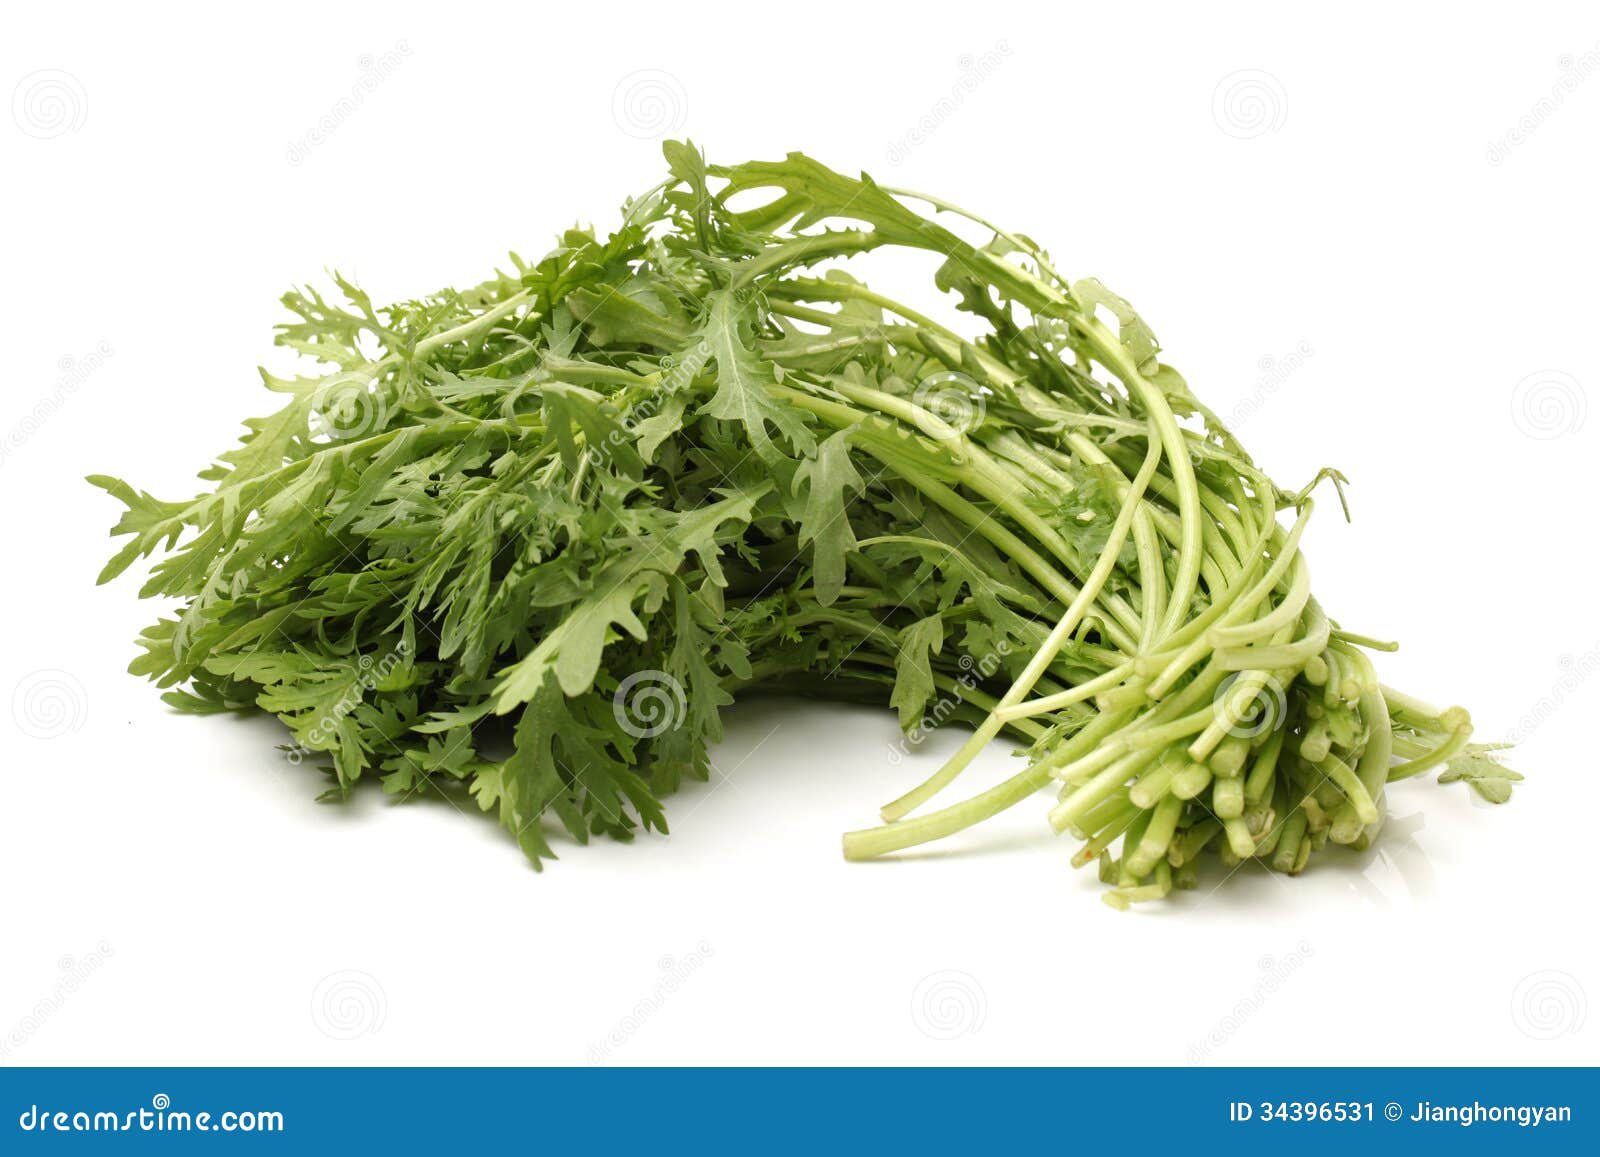 Edible Chrysanthemum Stock Image  Image: 34396531